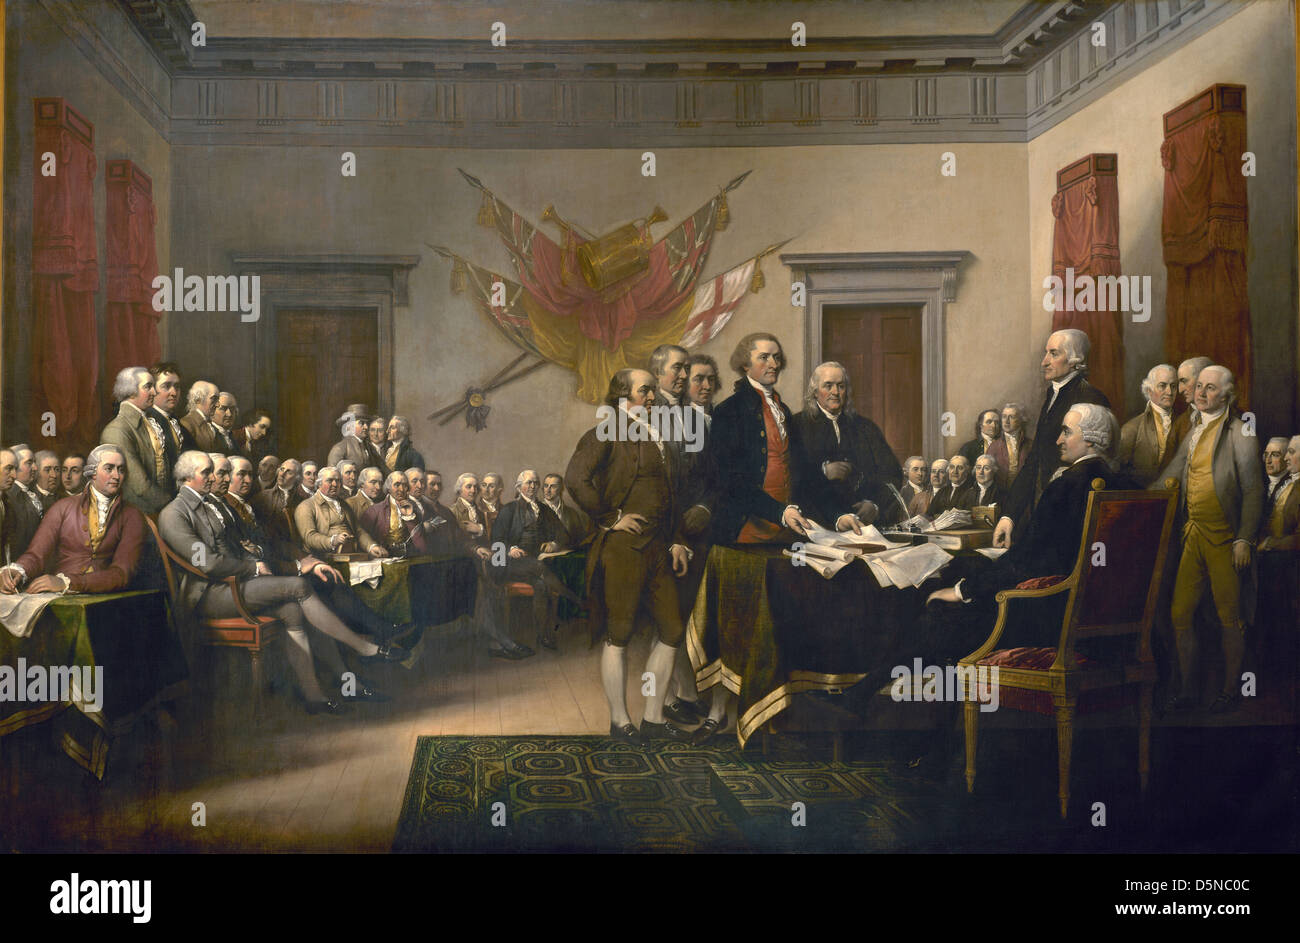 Dichiarazione Americana di Indipendenza. 1819 Dipinto di John Trumbull mostra comitato di redazione presentando il loro lavoro al congresso Foto Stock